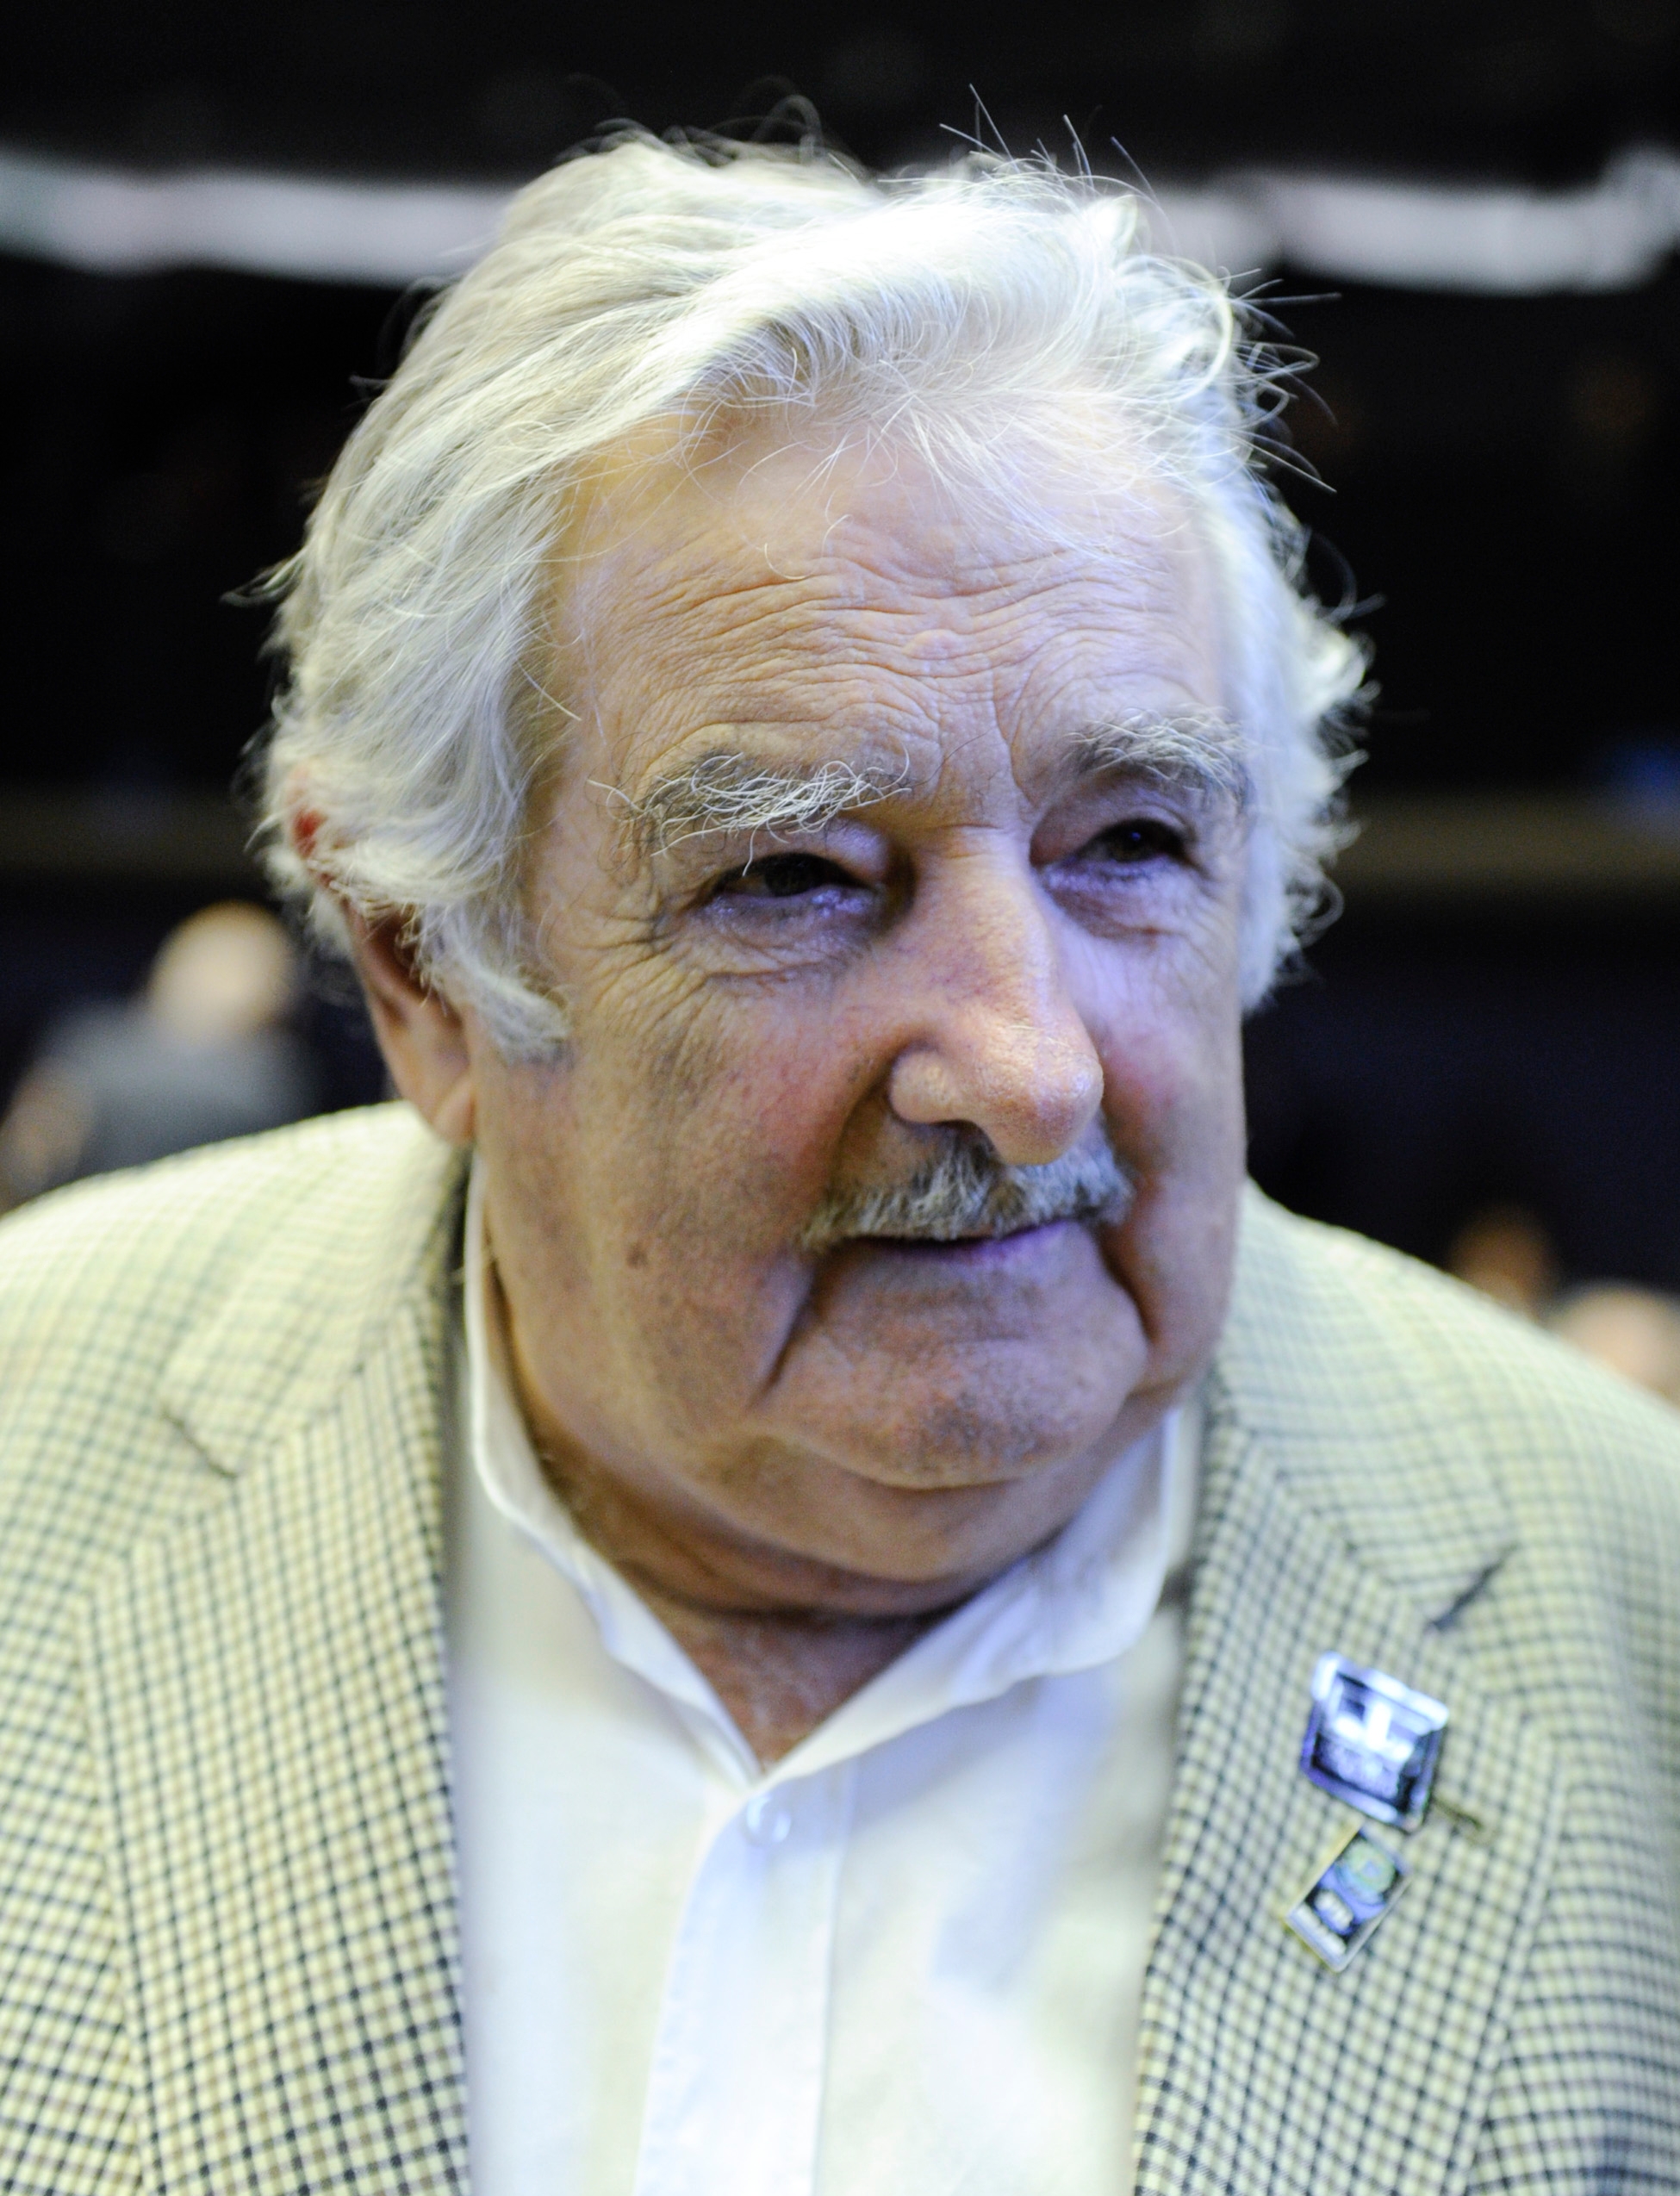 auteur Jose Mujica de la citation Nous pouvons presque tout recycler maintenant. Si nous vivions selon nos moyens, en étant prudent, les 7 milliards de personnes dans le monde pourraient avoir tout ce dont ils avaient besoin. La politique mondiale devrait évoluer dans cette direction. Mais nous considérons comme des gens et des pays, pas comme une espèce.